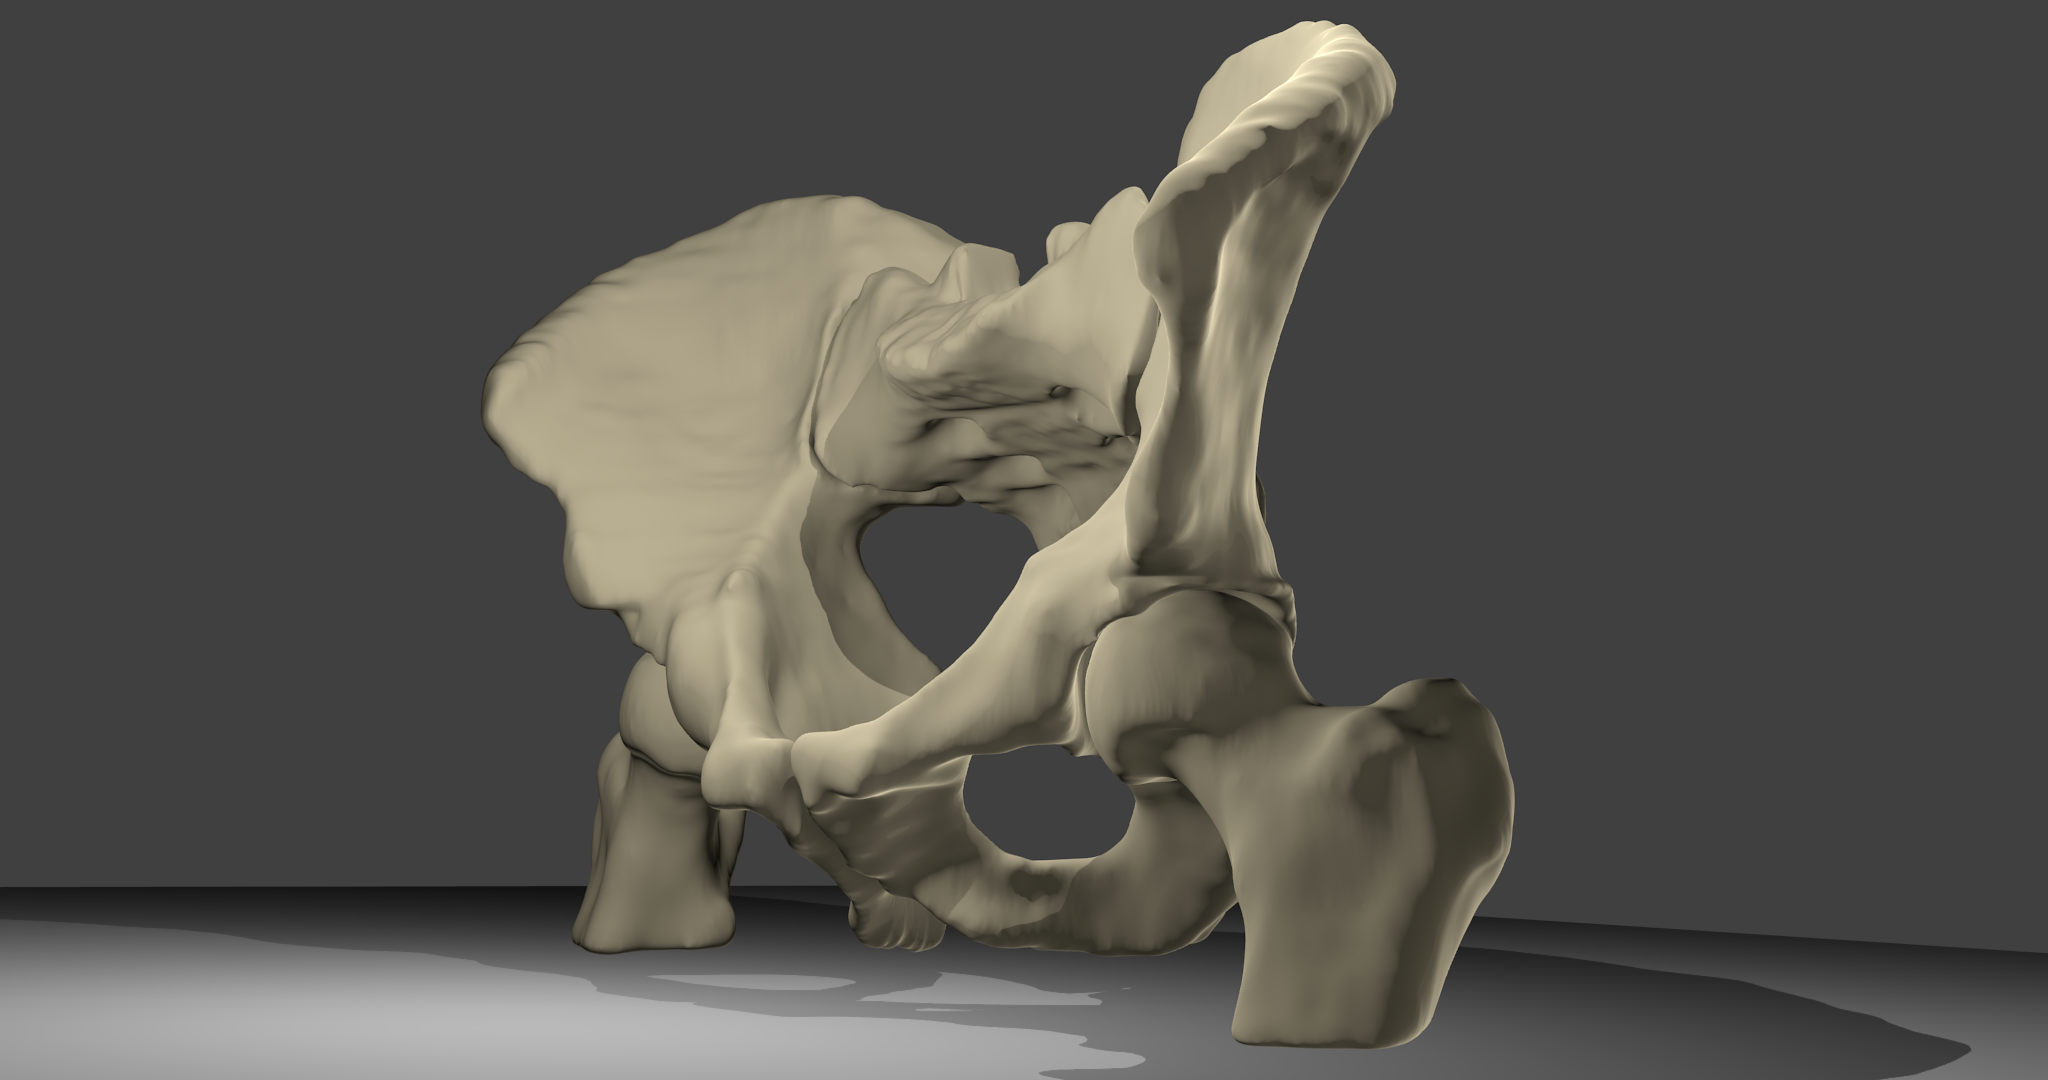 3D-Modell Beckenknochen:Beckenknochen mit Oberschenkelknochen und Kreuzbein, männlich. Ansicht von vorne links.